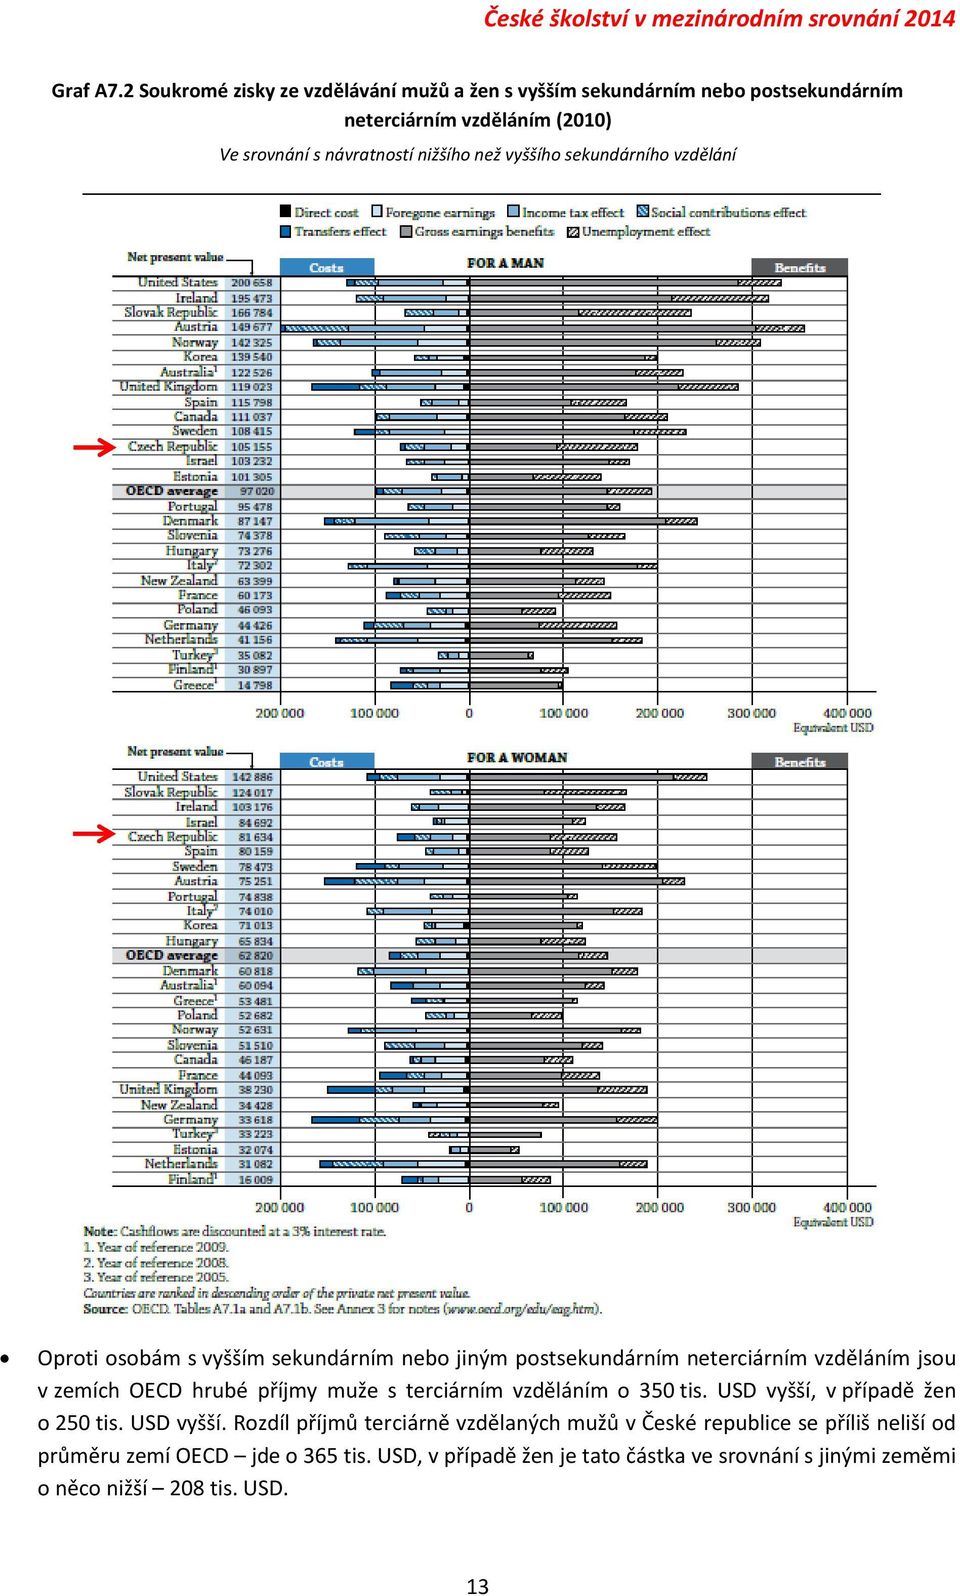 než vyššího sekundárního vzdělání Oproti osobám s vyšším sekundárním nebo jiným postsekundárním neterciárním vzděláním jsou v zemích OECD hrubé